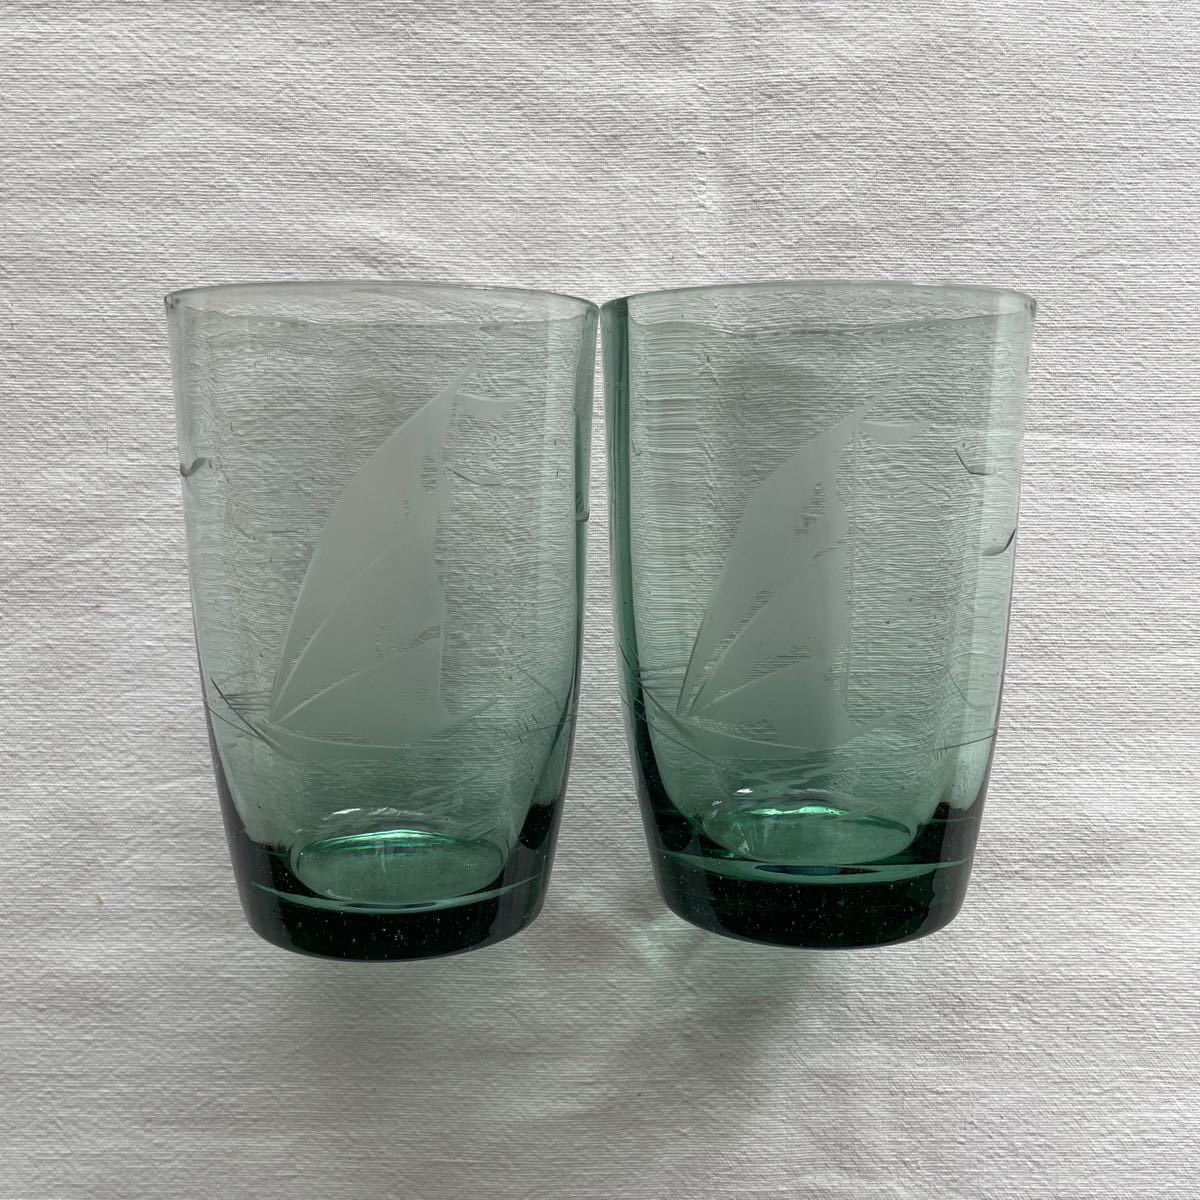 昭和戦前 ガラスコップ グラス 和ガラス 青緑 深緑 ヨット 船 海 エッチング 2点 Japanese vintage pressed glass cup_画像1